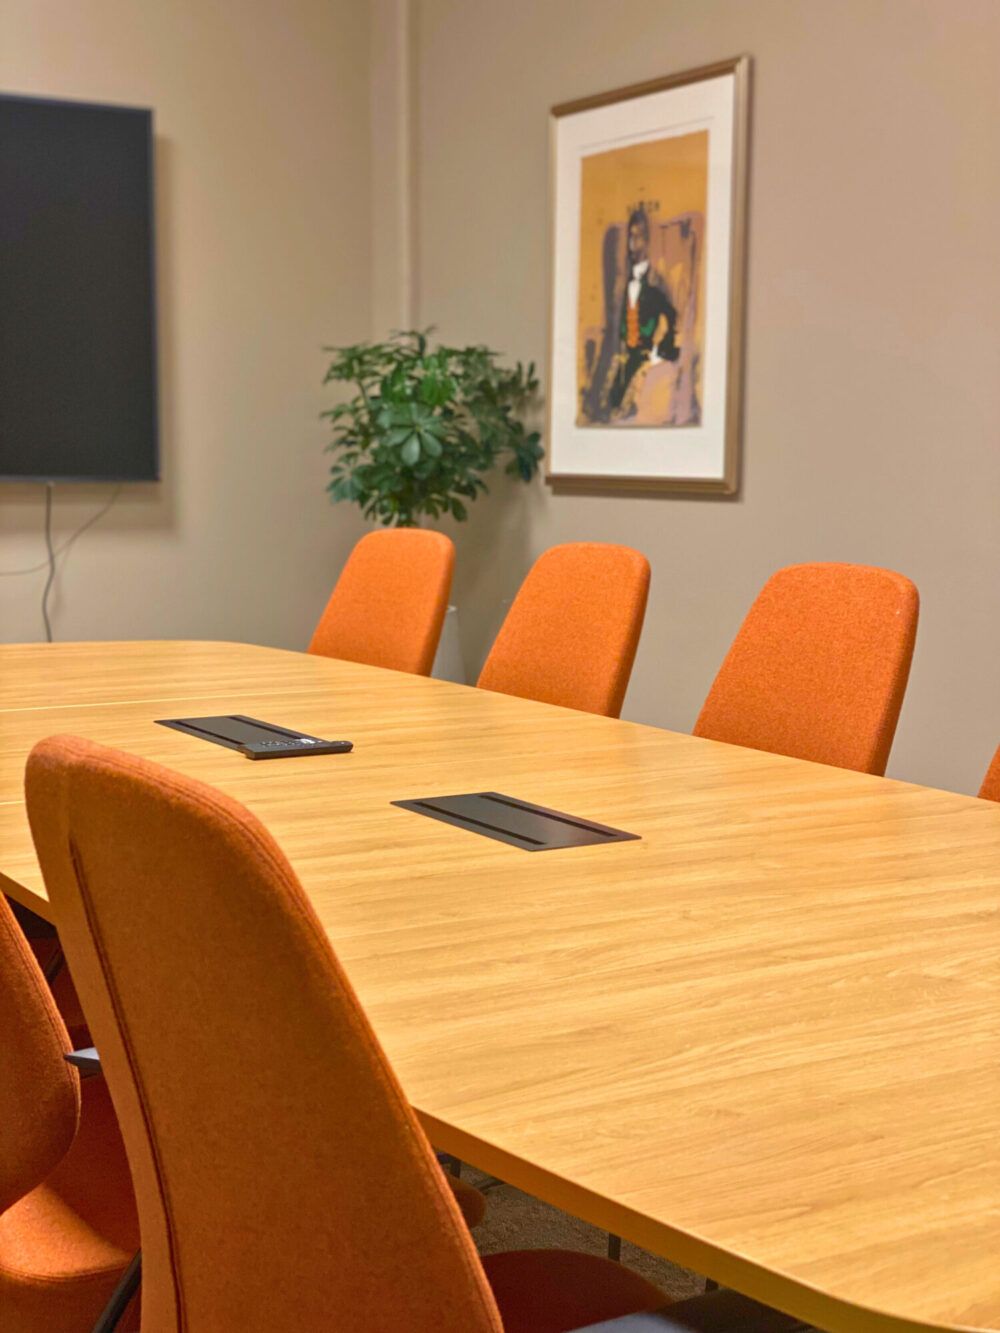 Møterom på Aker Solution. Jordfarger med oransje møteromsstoler fra Kinnarps med bord med svart understell og tre bordplate. Grønne planter er en fin kontrast mot jordfargene